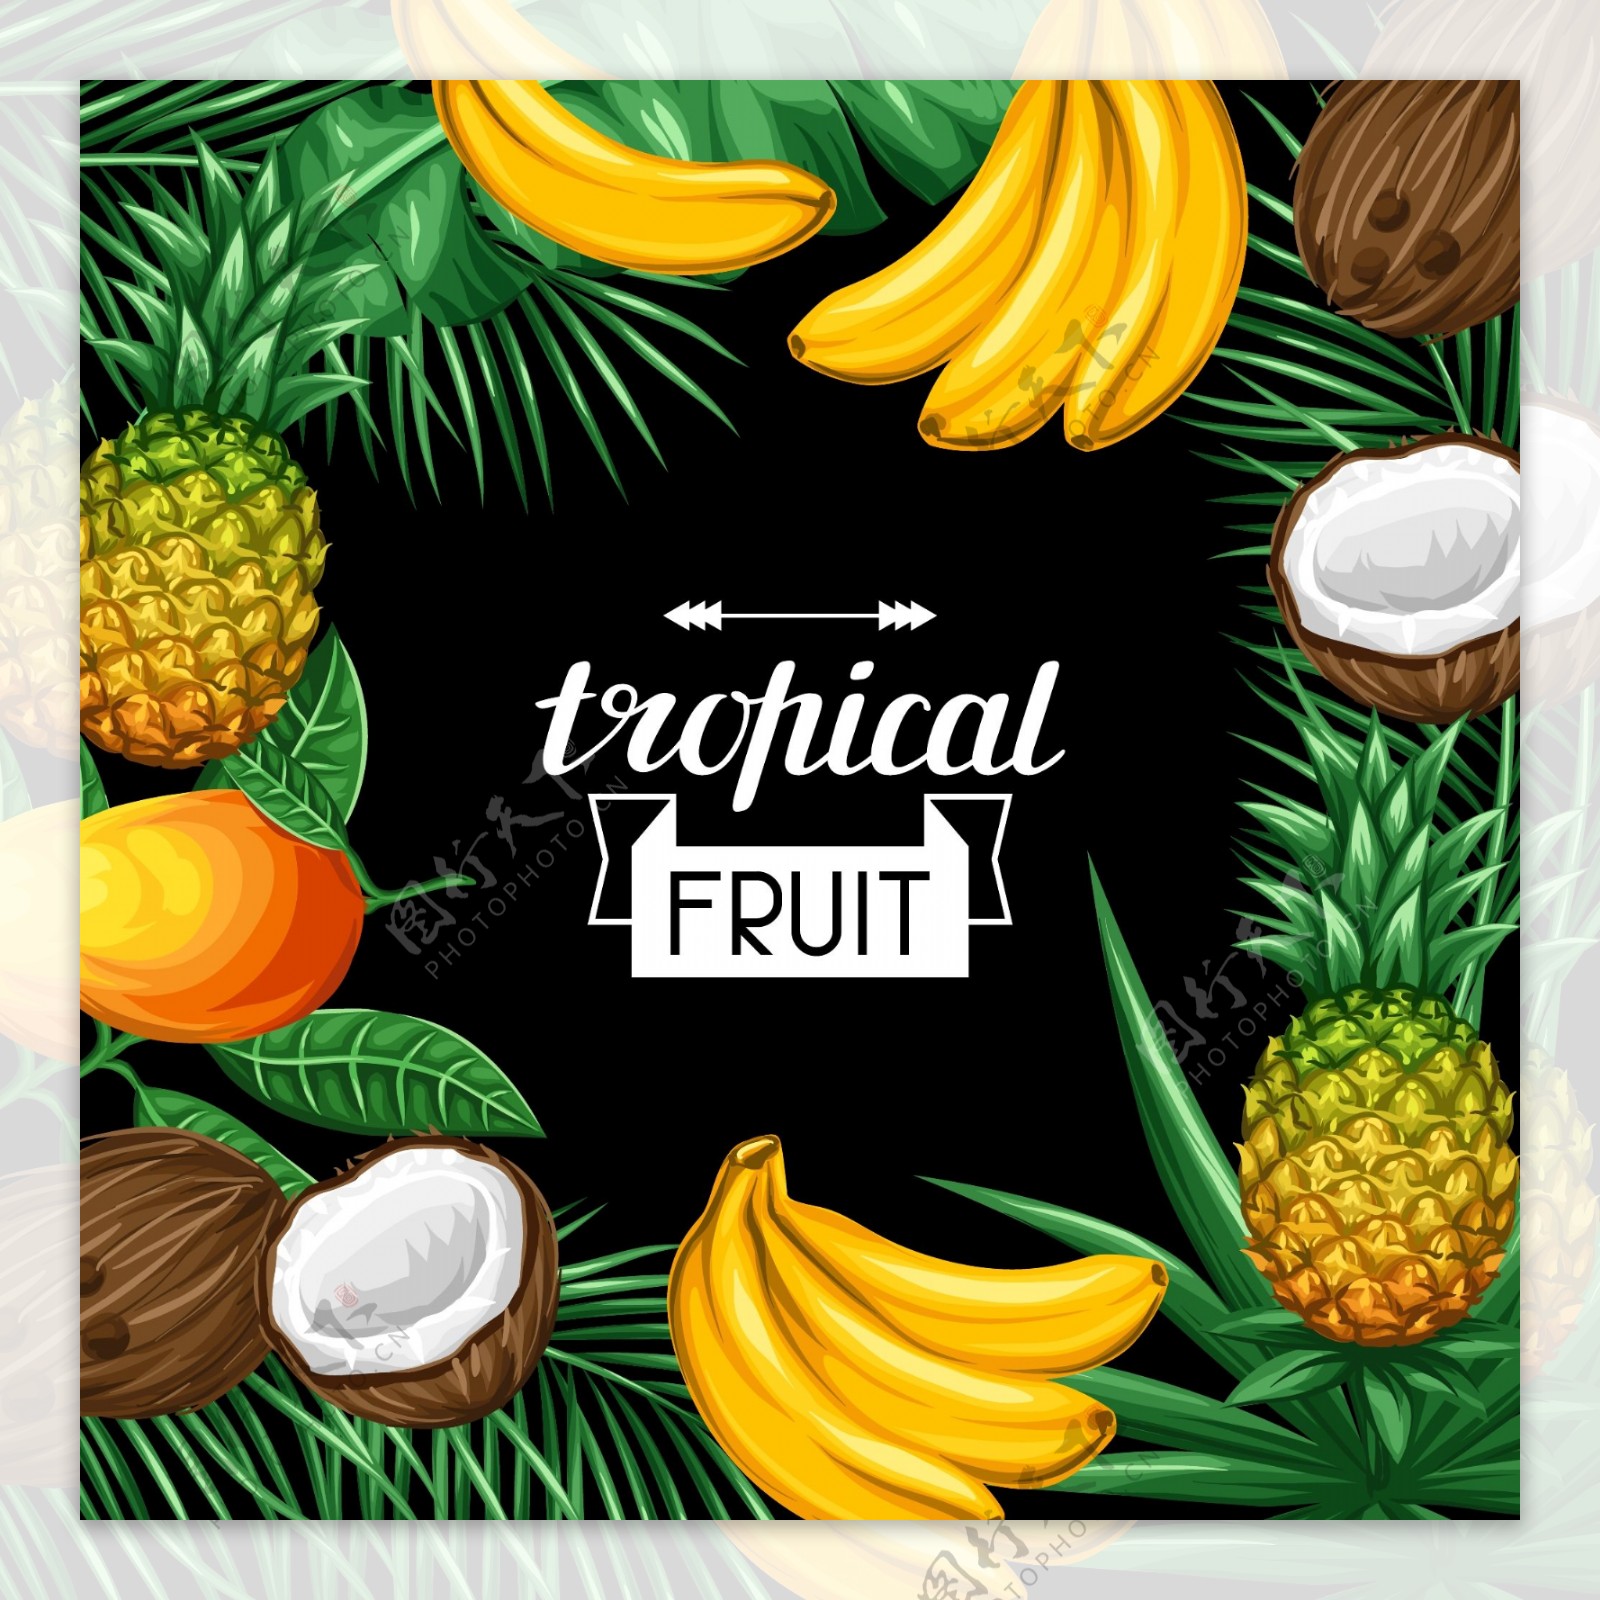 彩绘热带水果框架设计矢量素材.